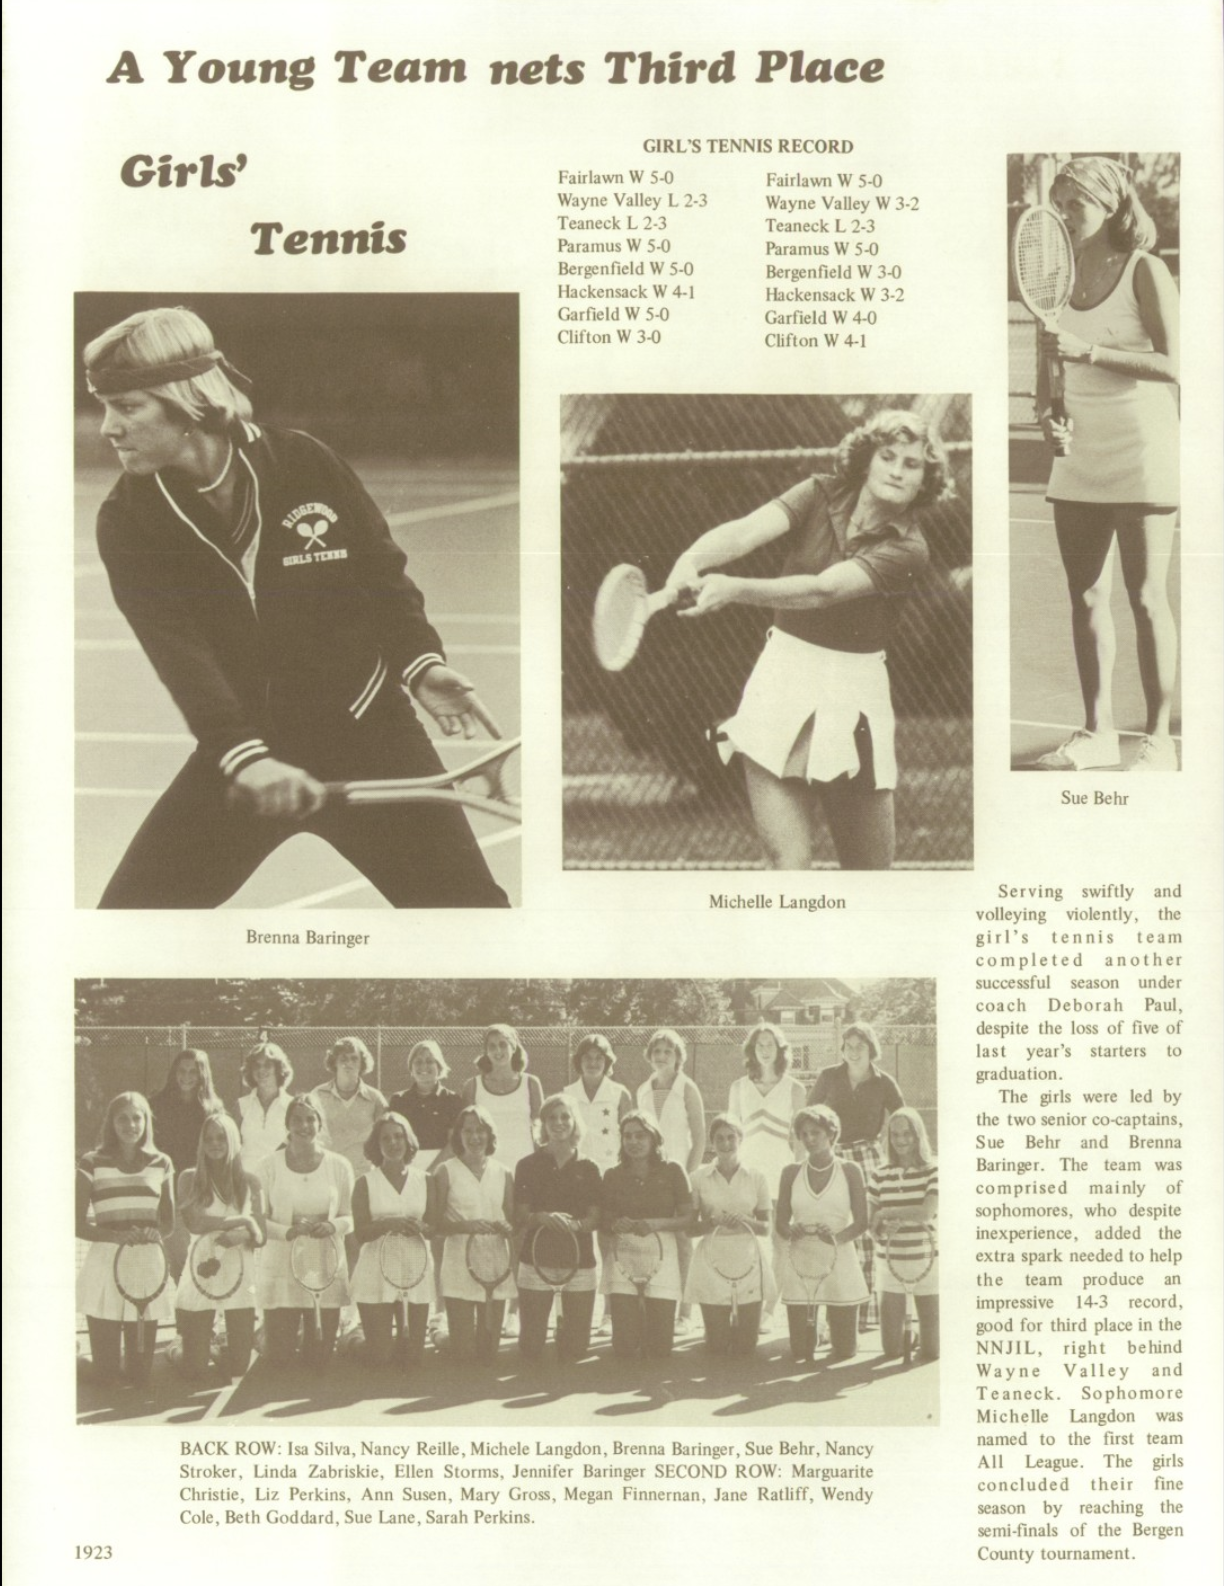 1976 Girls’ Tennis Team